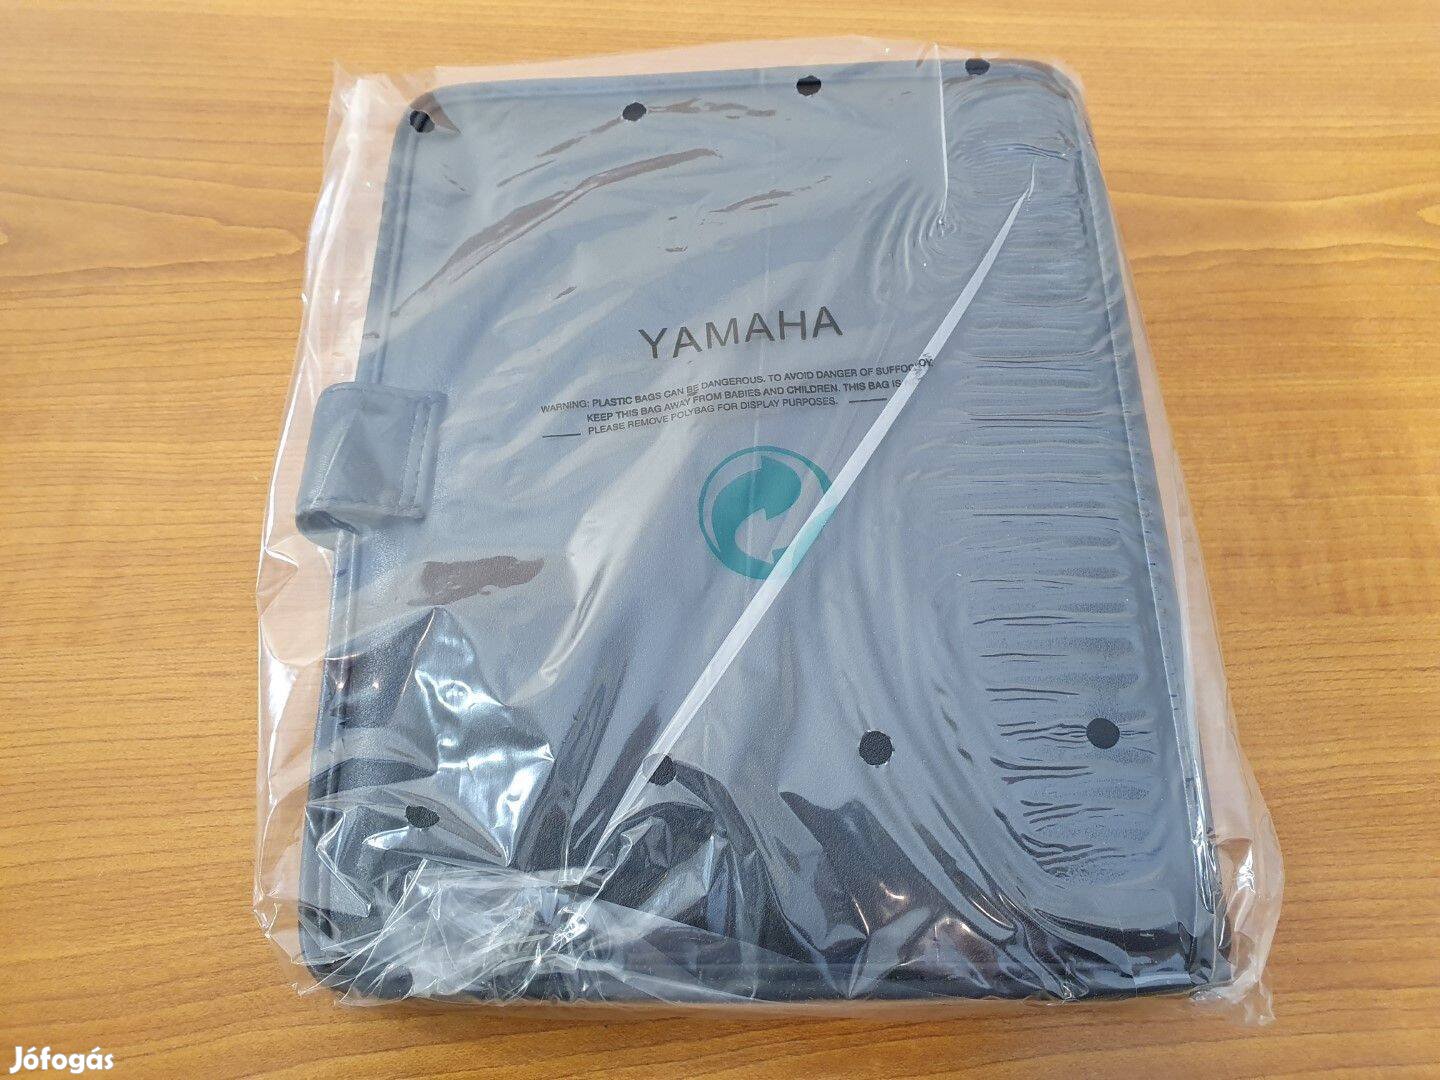 Yamaha Bőr Filofax, irat és kártyatartó - Új 16979